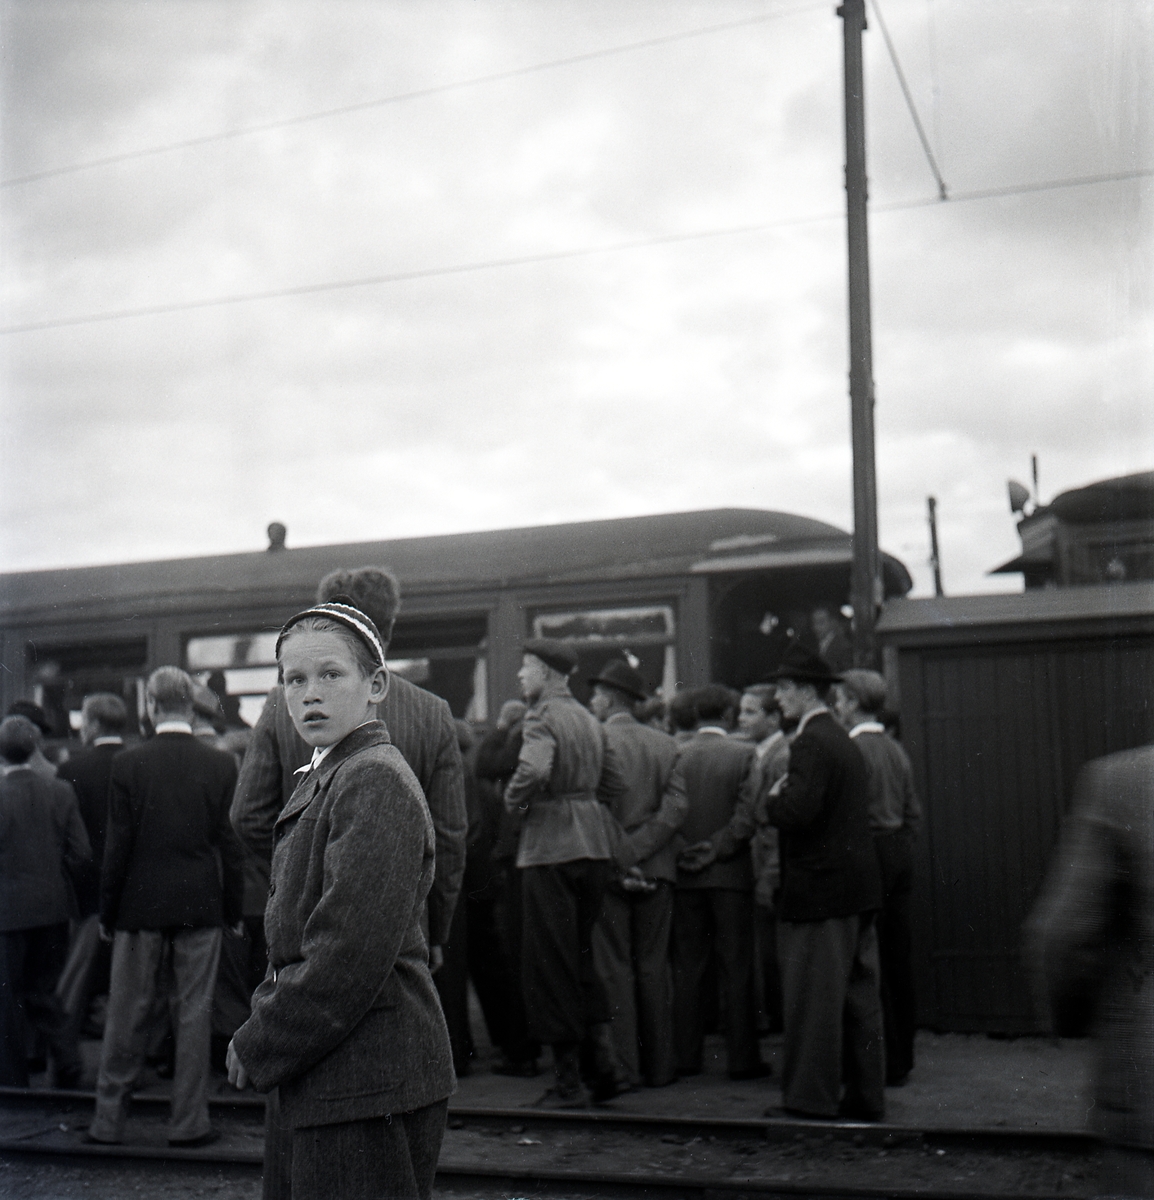 Nazistkravallerna. Folksamling på järnvägsstationen. Nazistmotståndarna samlades vid MÖJ:s smalspåriga järnväg varifrån nazisterna skulle avresa mot Klockrike. Den 4-5 september 1943.